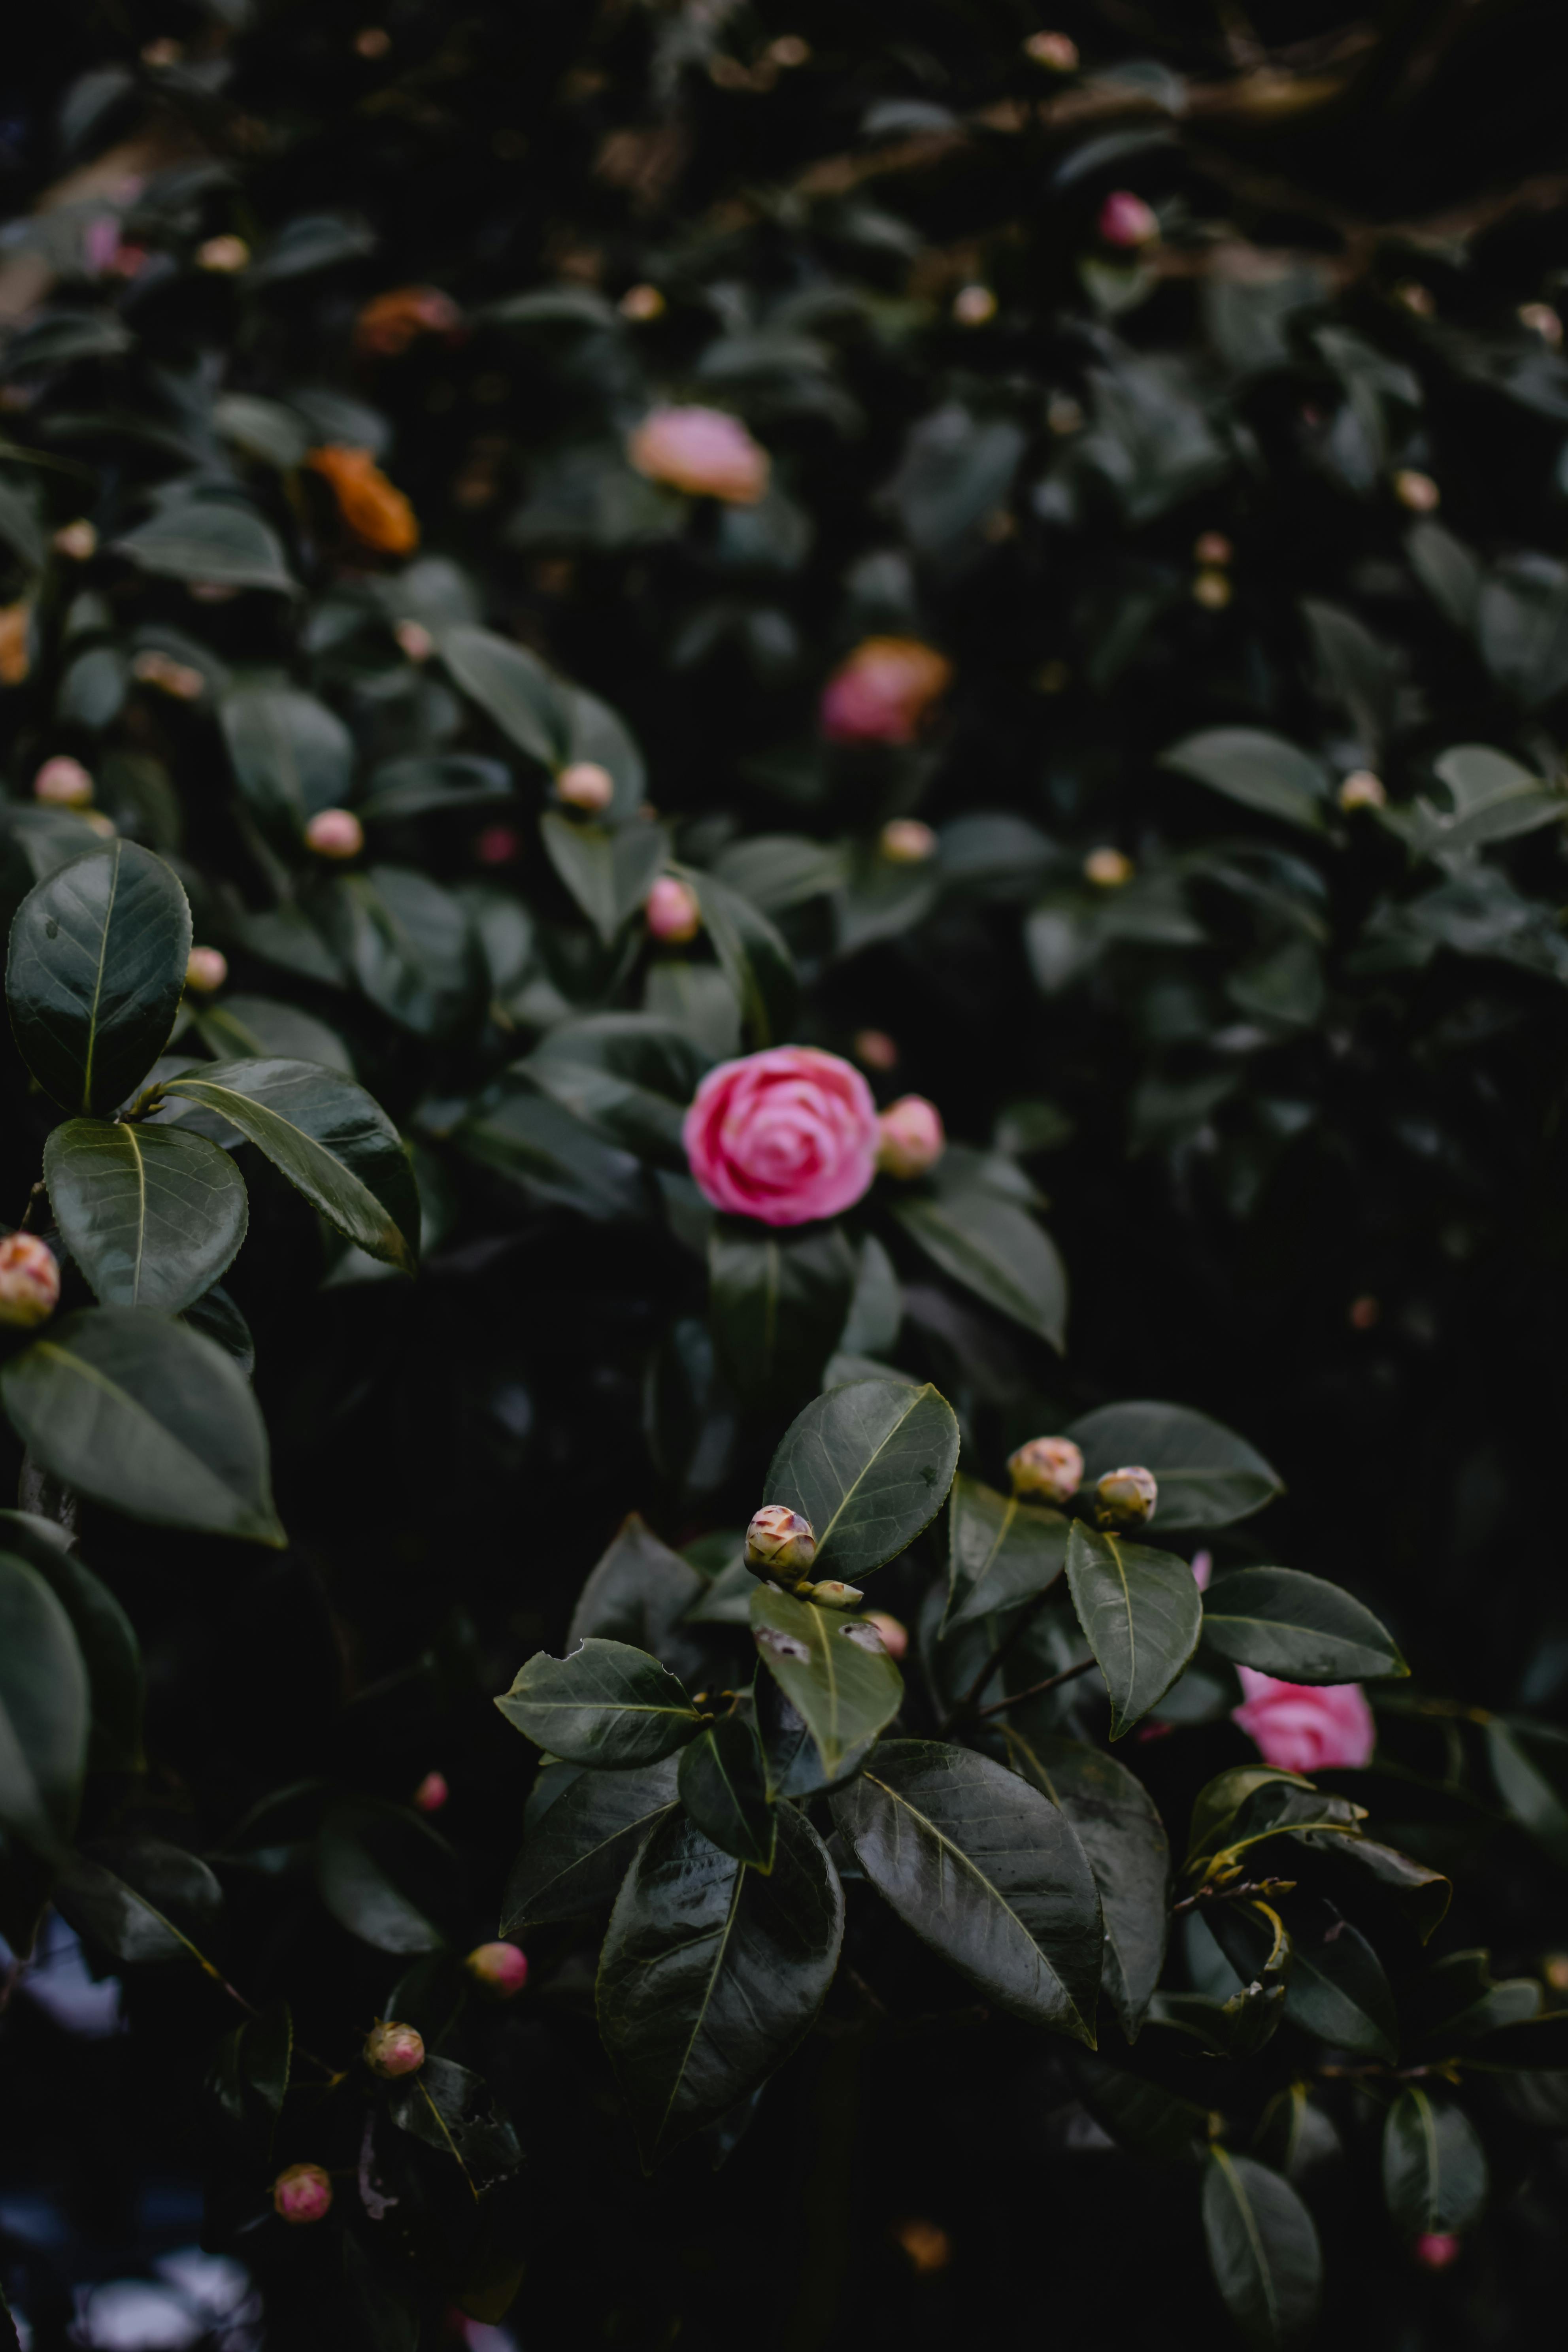 Màu hồng tươi tắn và tràn đầy sức sống của hoa hồng chắc chắn sẽ khiến bạn ngắm nhìn mãi không thôi. Hãy cùng khám phá những bức ảnh tuyệt đẹp về loài hoa này và cảm nhận sức sống và sự tươi mới mỗi ngày.